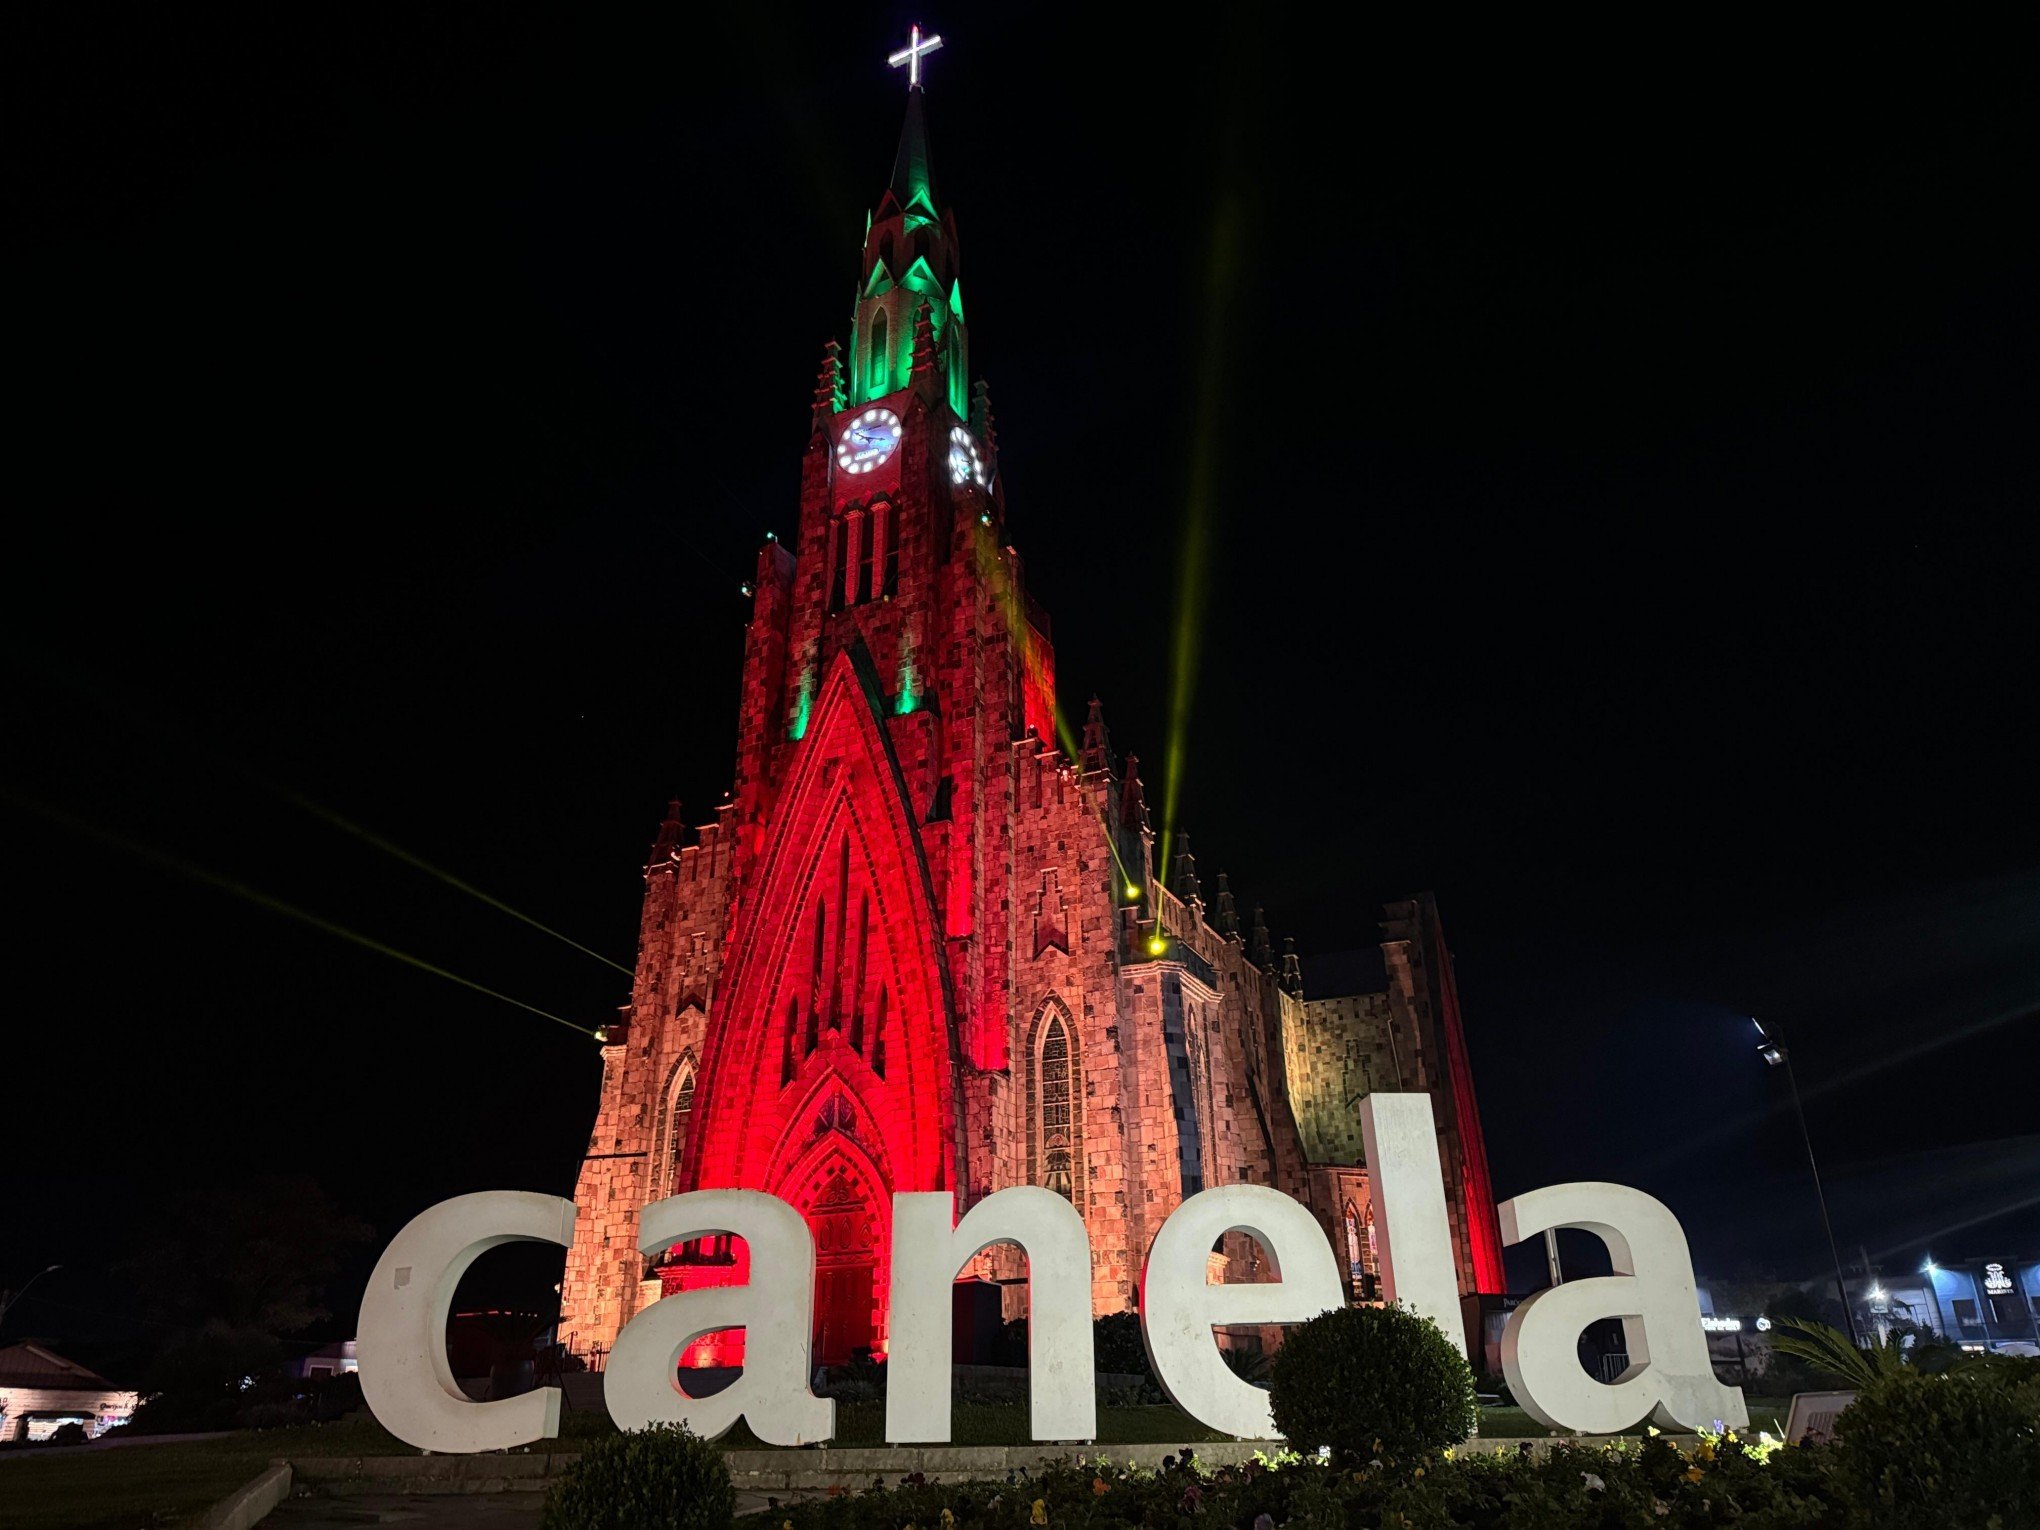 CATÁSTROFE NO RS: Estado recebe homenagem com iluminação e música especial na Catedral de Pedra em Canela